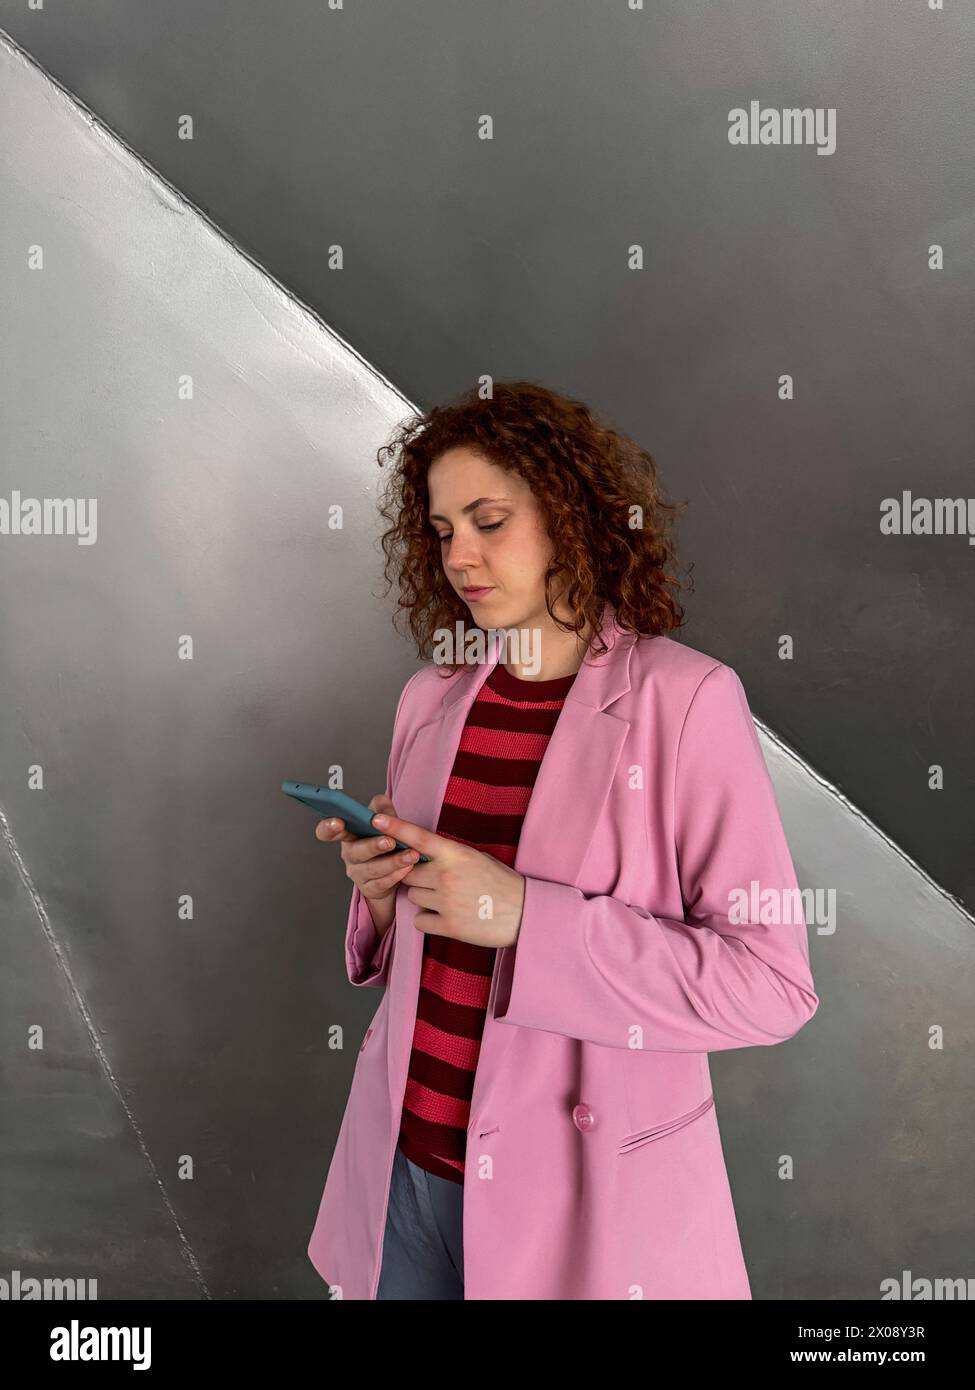 Una giovane donna rossa dai capelli ricci è concentrata sul suo telefono cellulare, rivestita da un elegante blazer rosa su una camicia a righe, con sfondo neutro Foto Stock